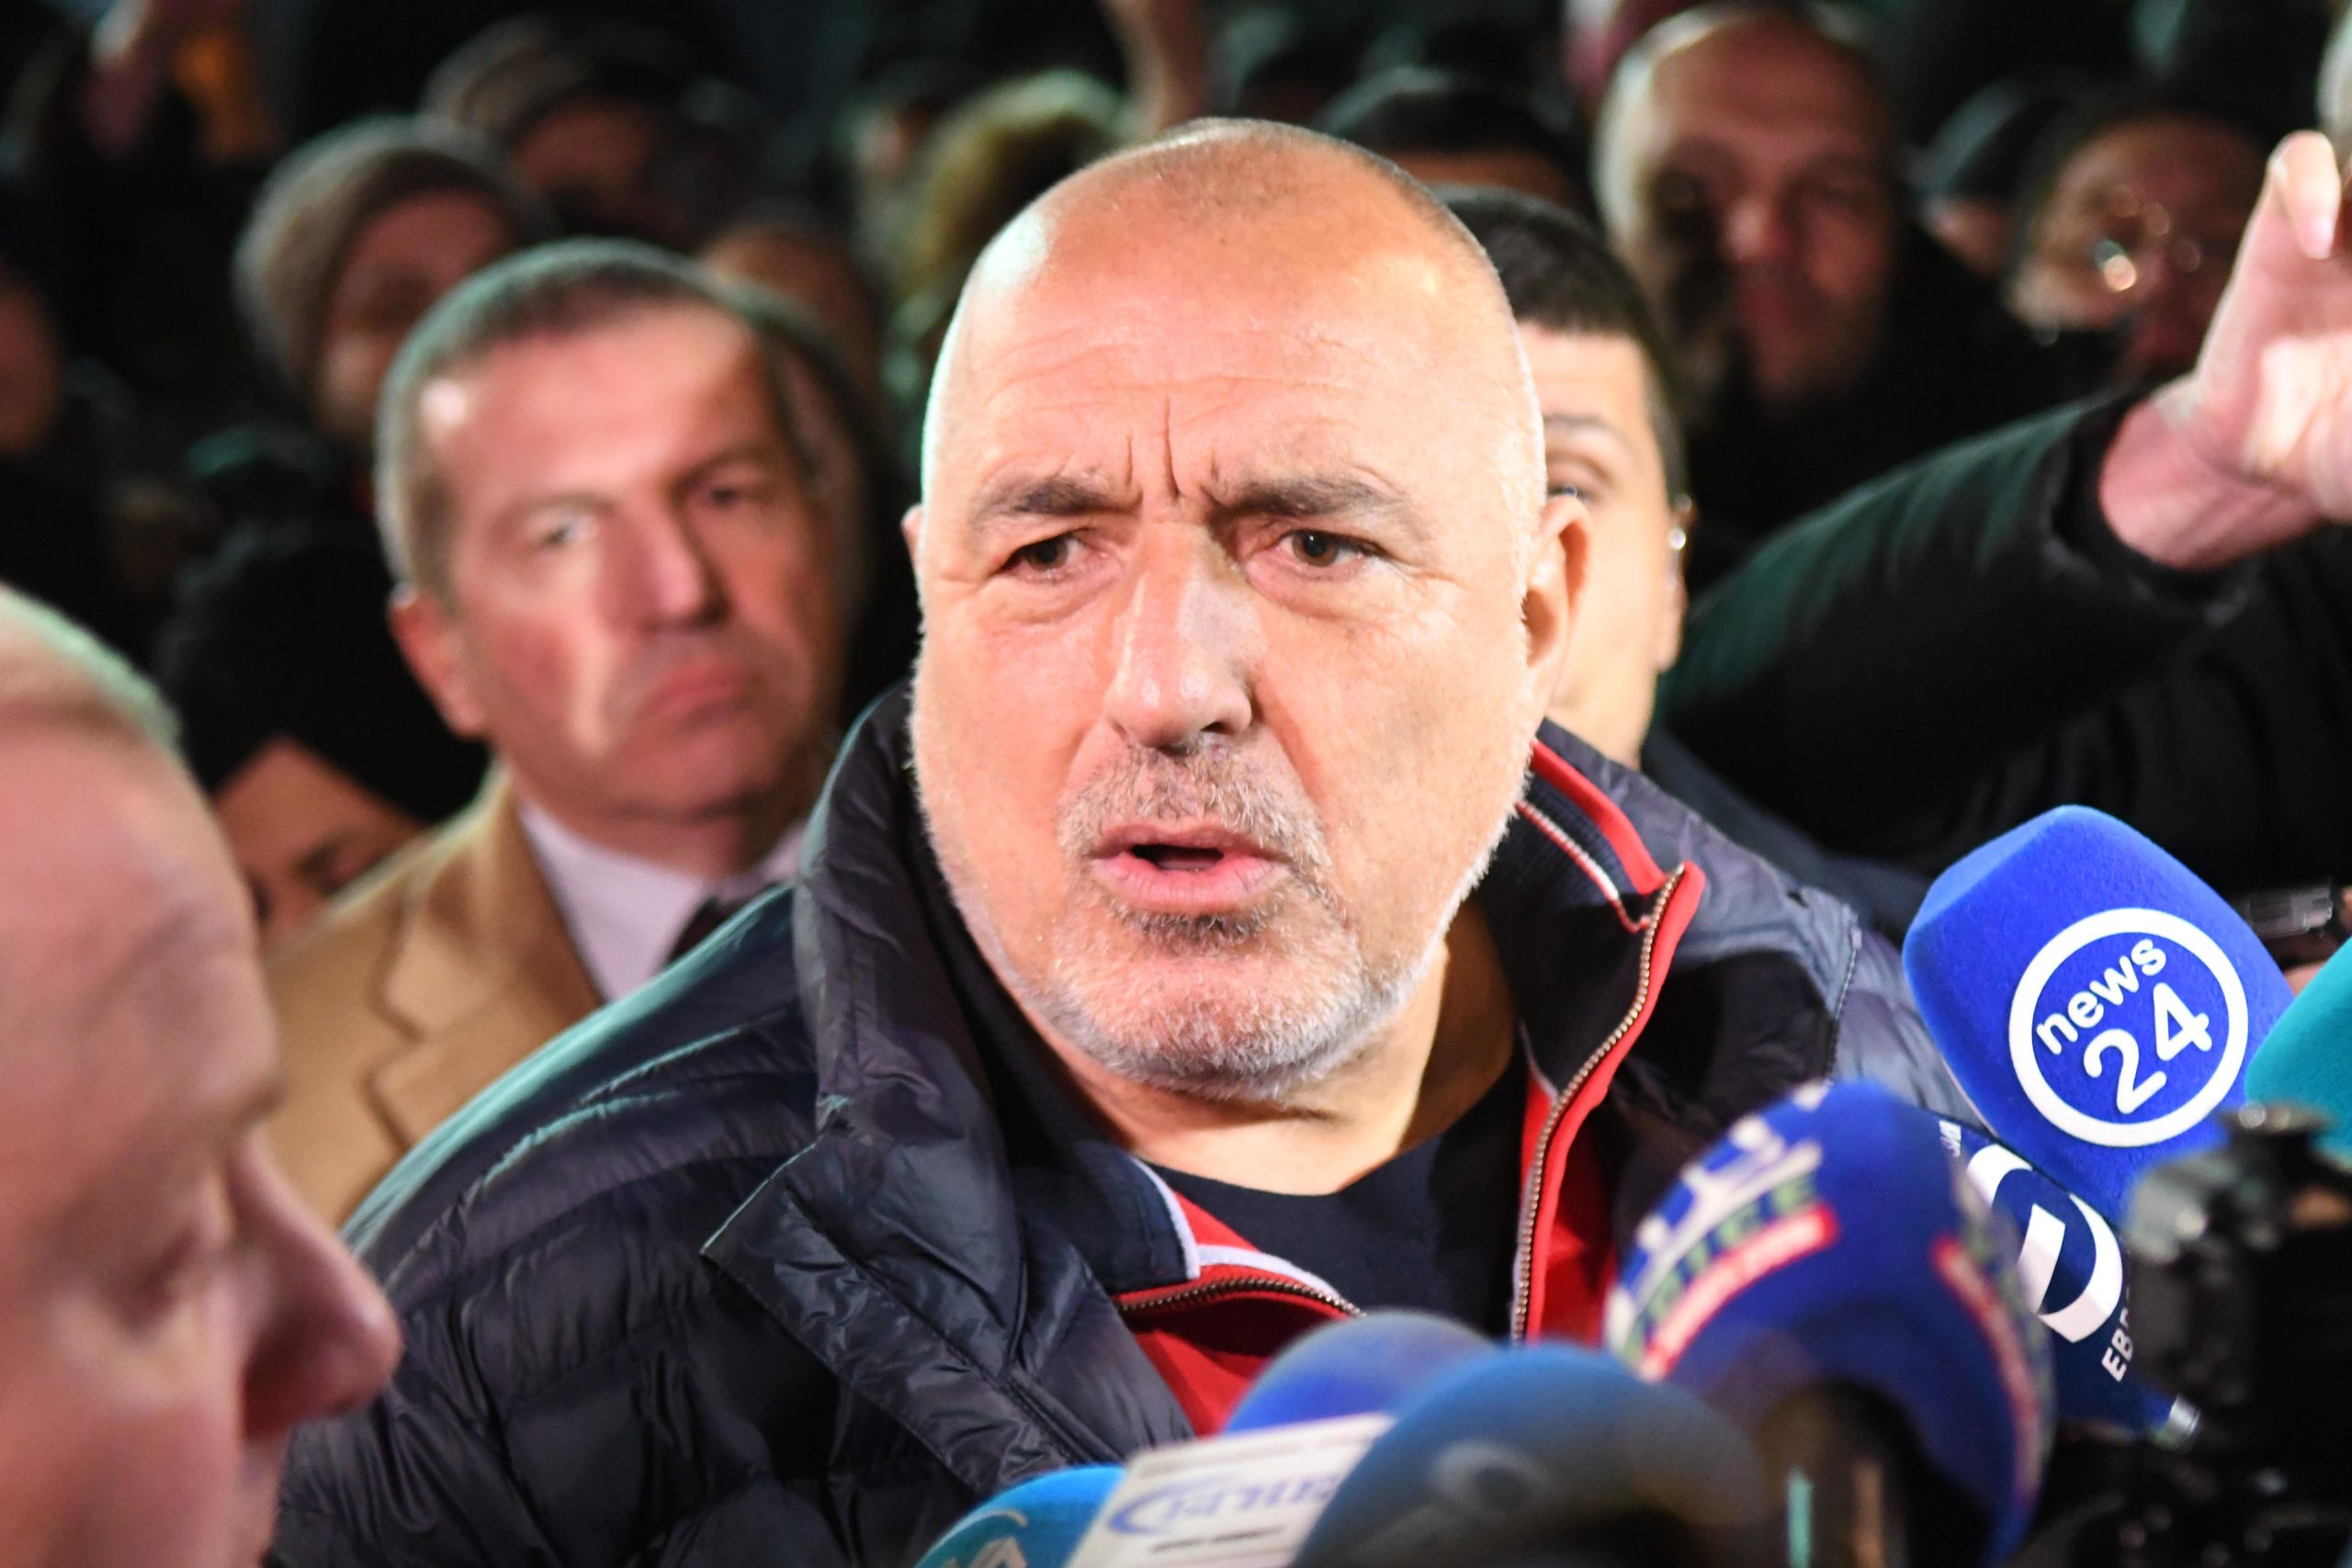 Лидерът на ГЕРБ Бойко Борисов отправи остри думи срещу съпредседателя